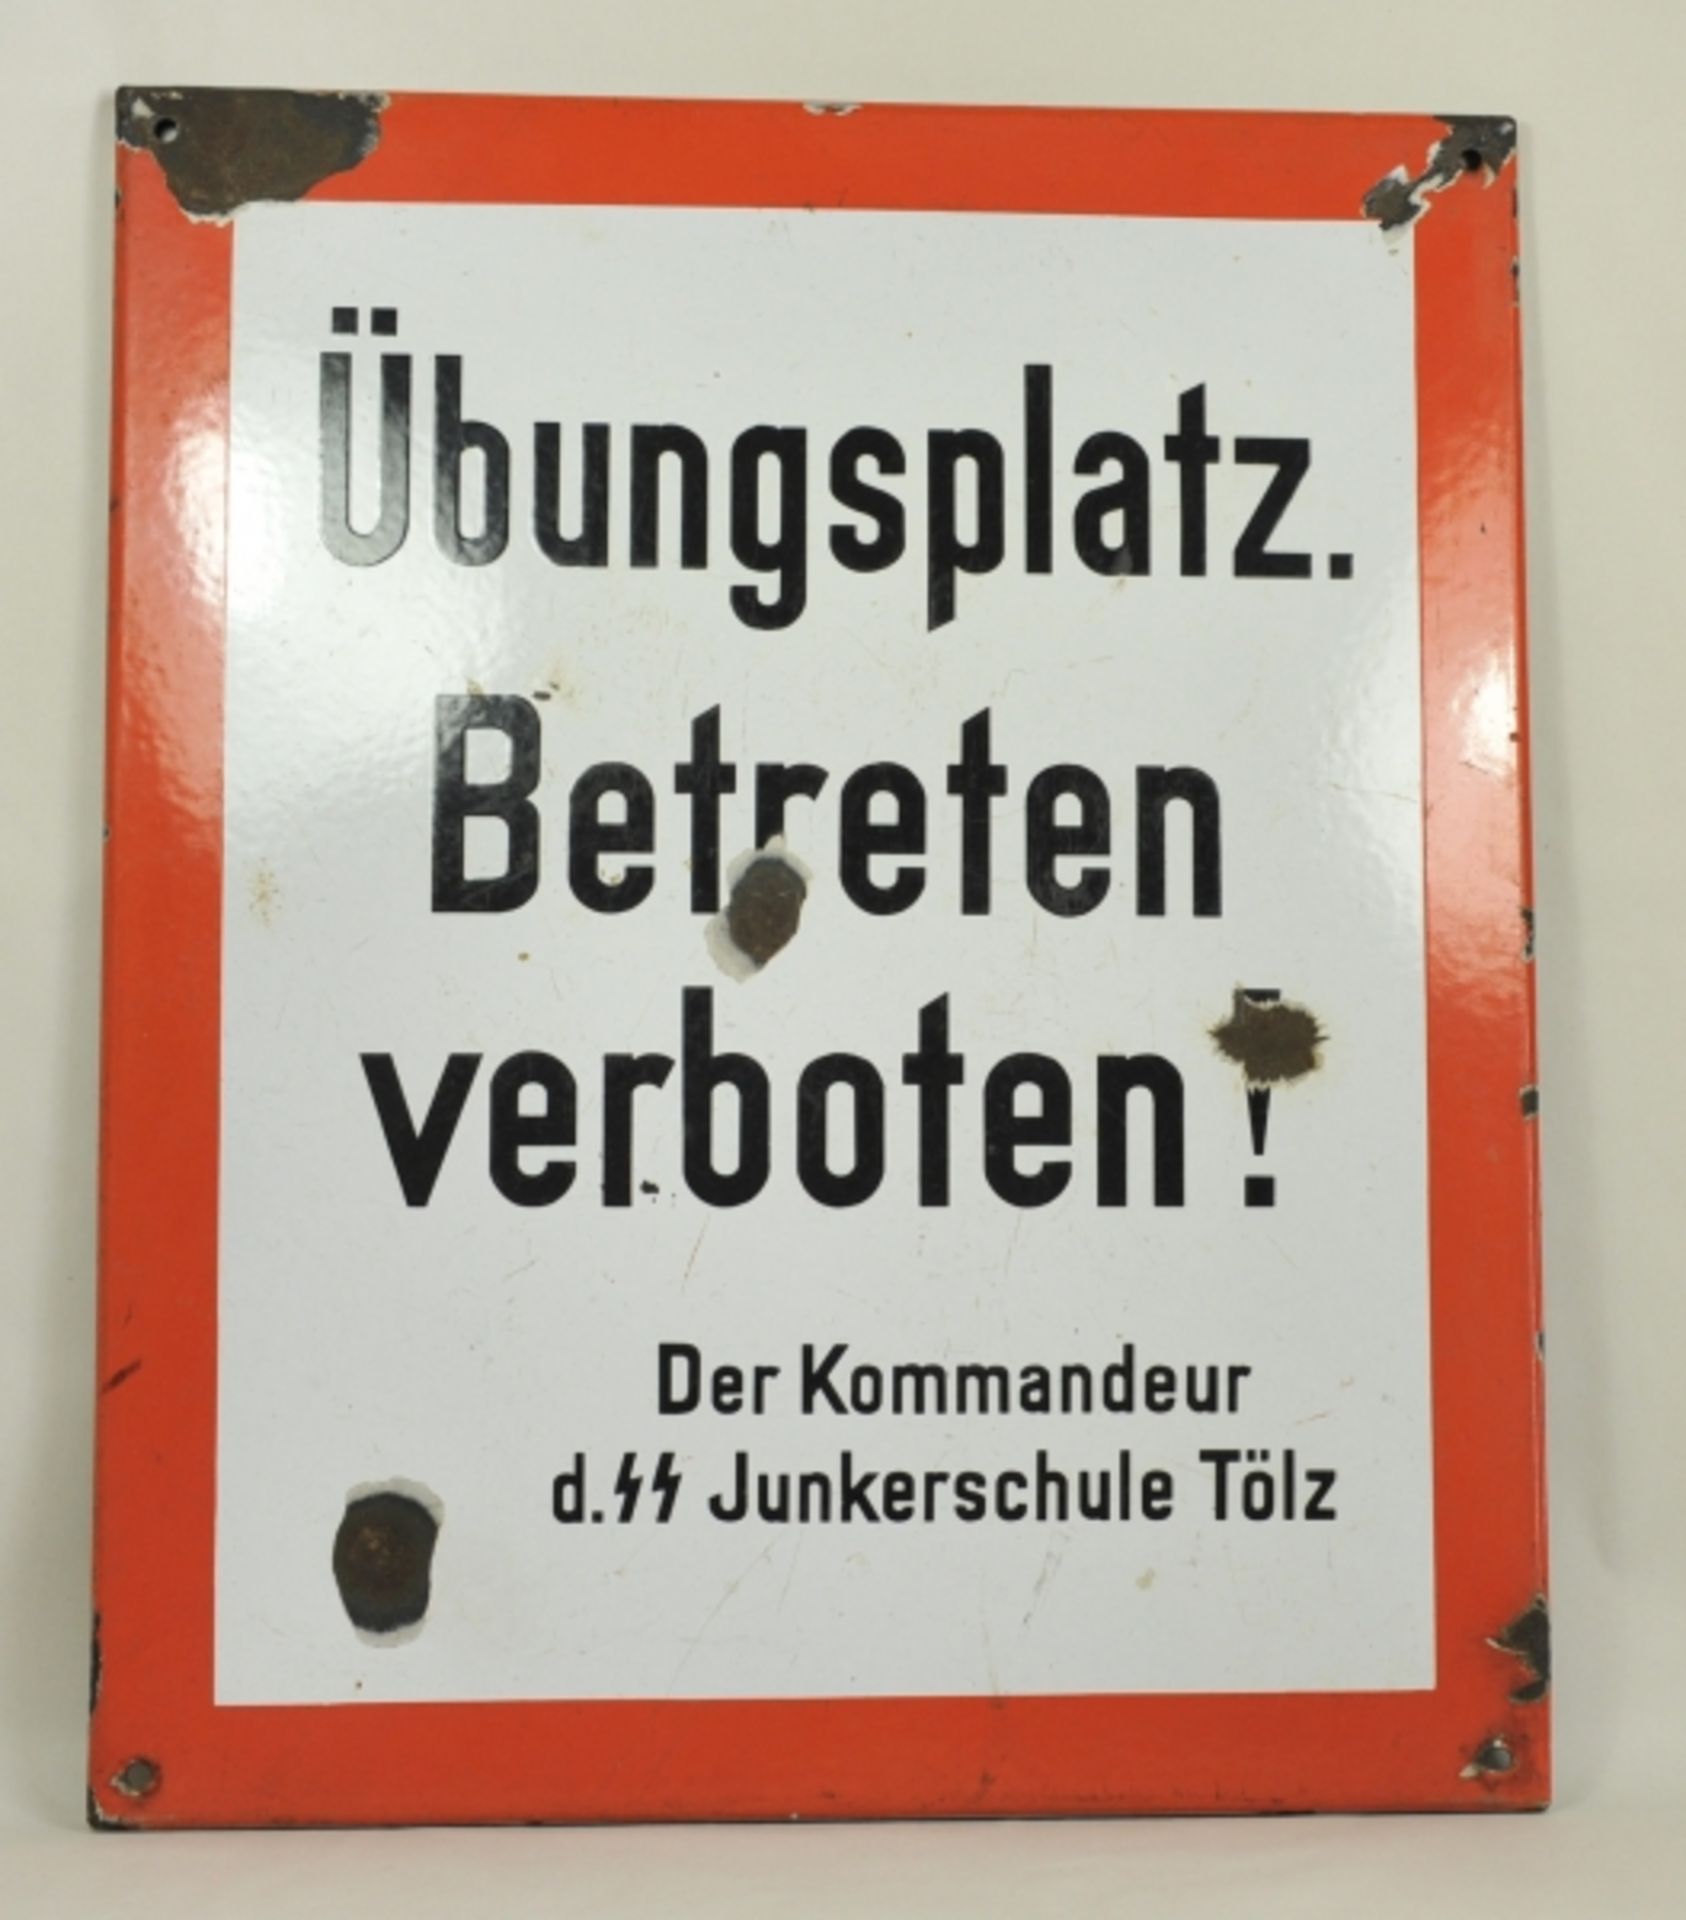 4.2.) Effekten / AusrüstungEmailleschild des Übungsplatzes - SS Junkerschule Tölz.Emailleschild